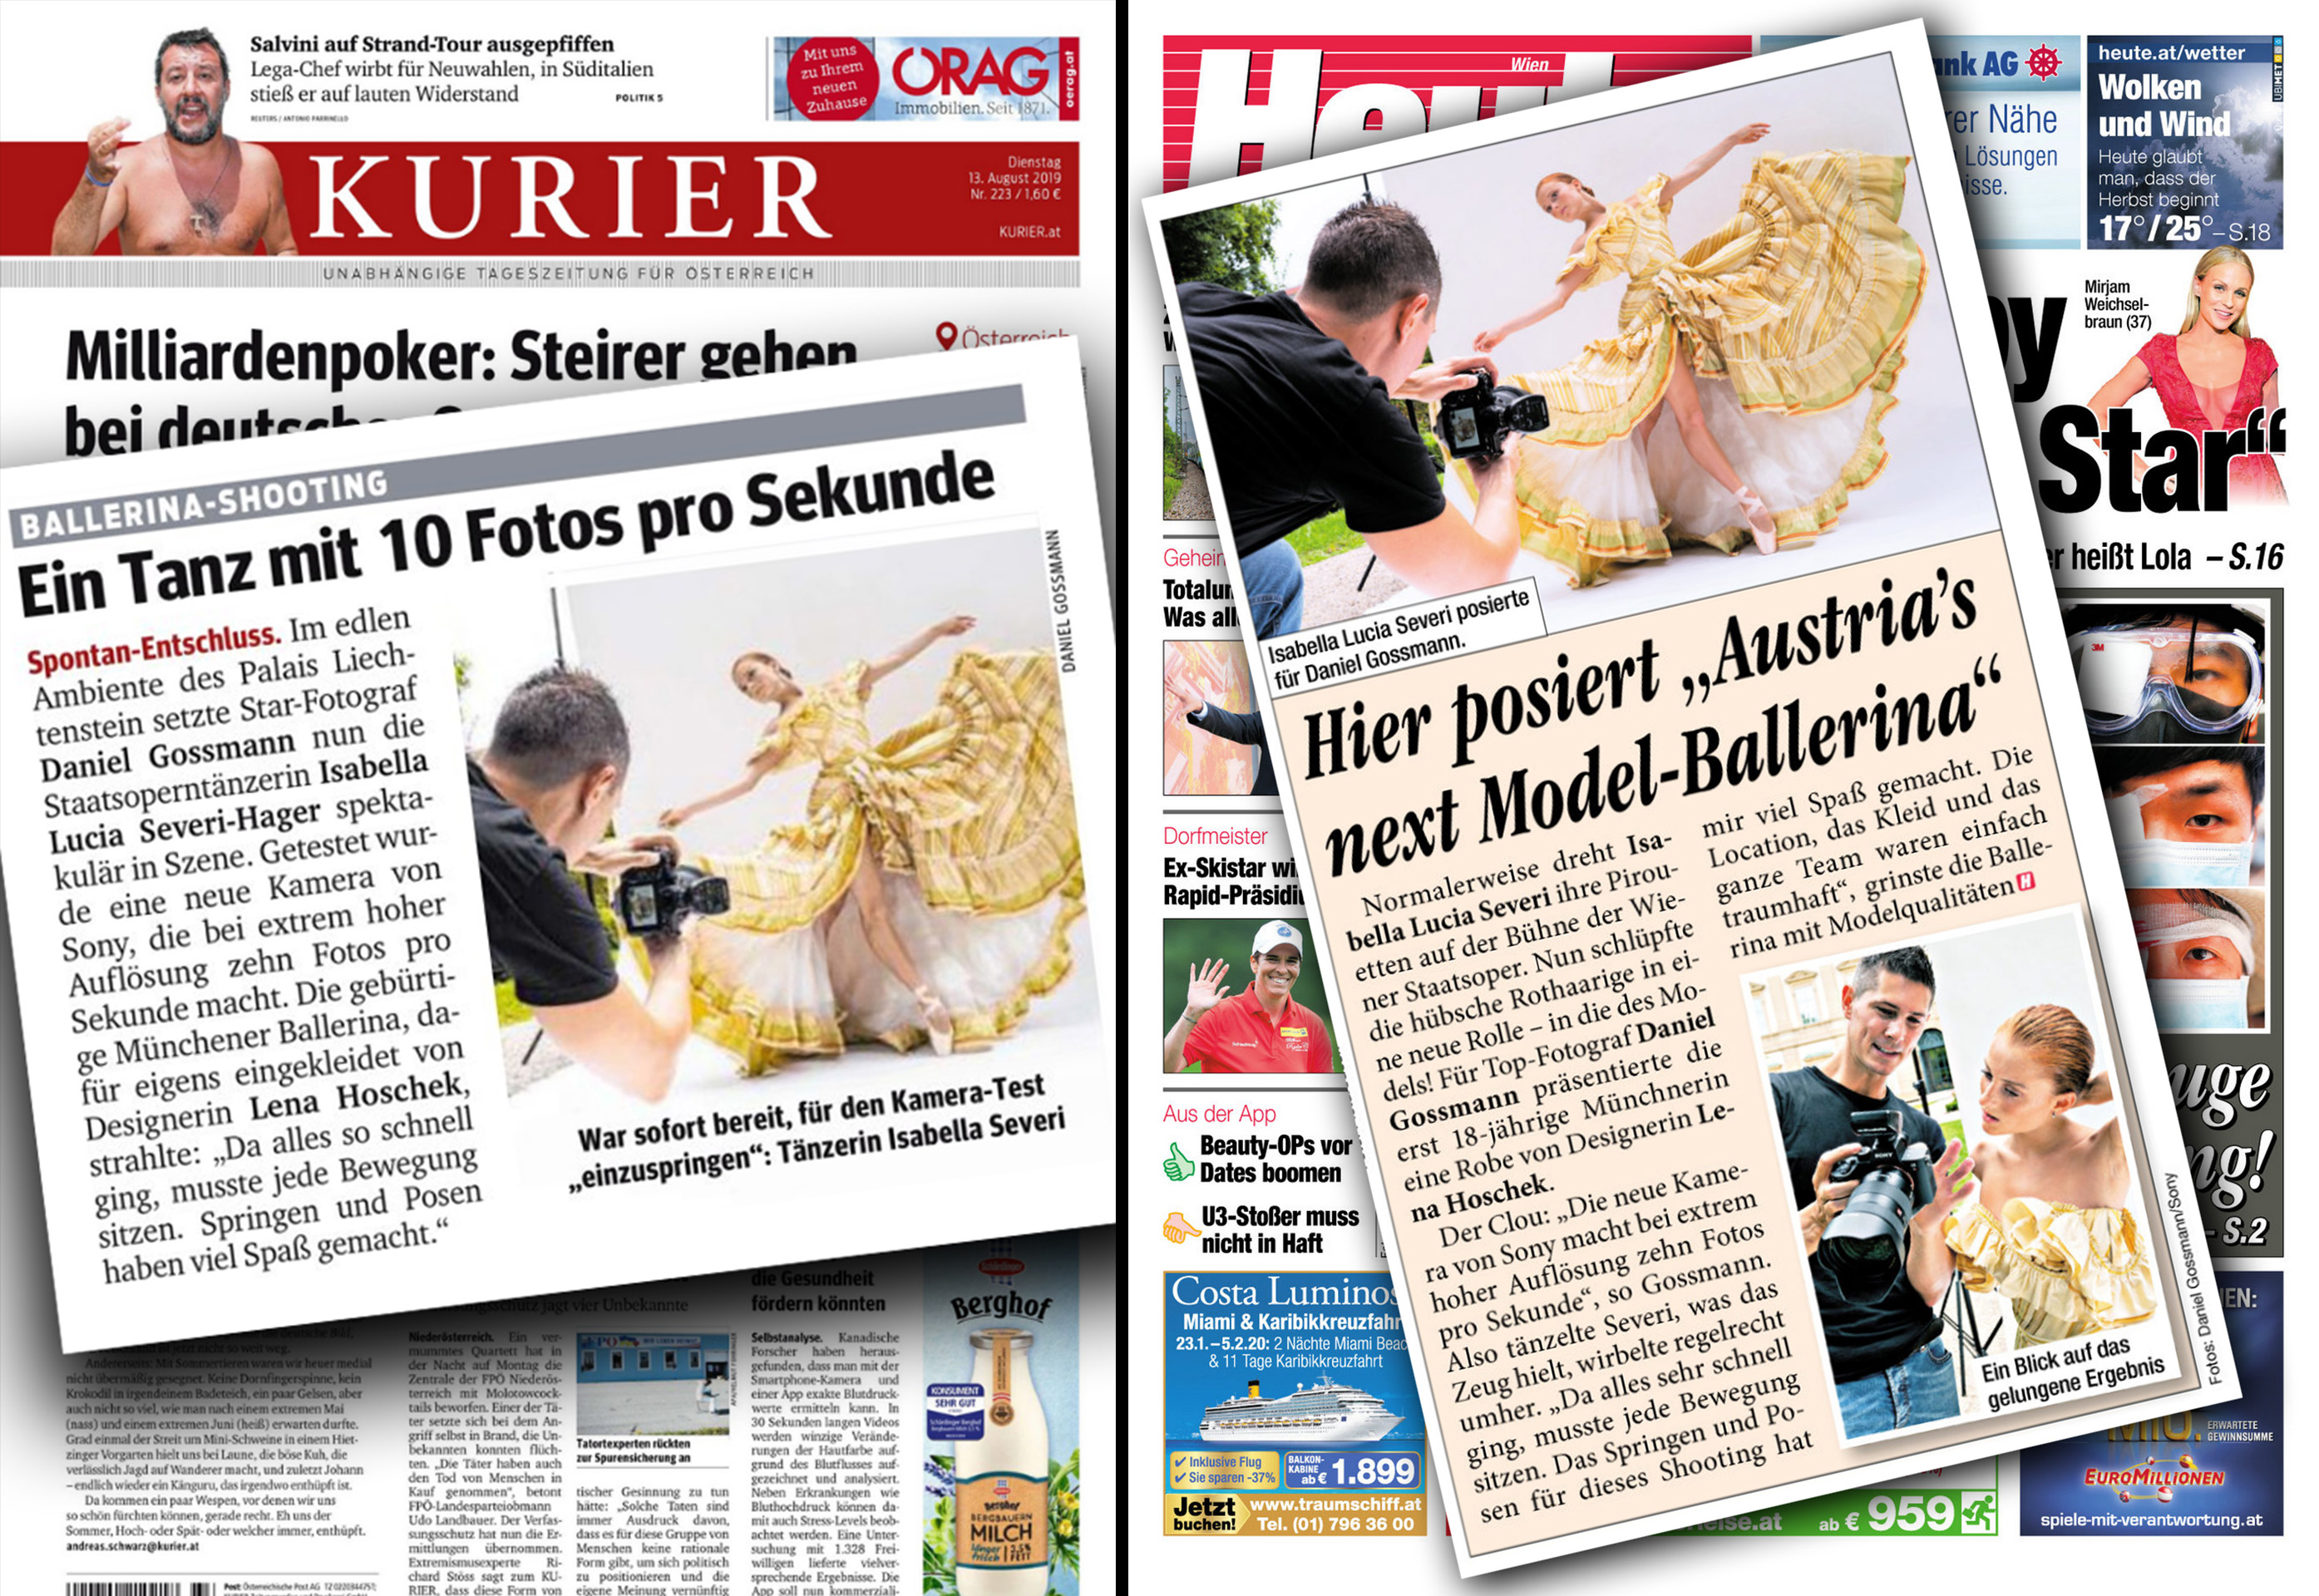 Kurier / Heute Tageszeitung